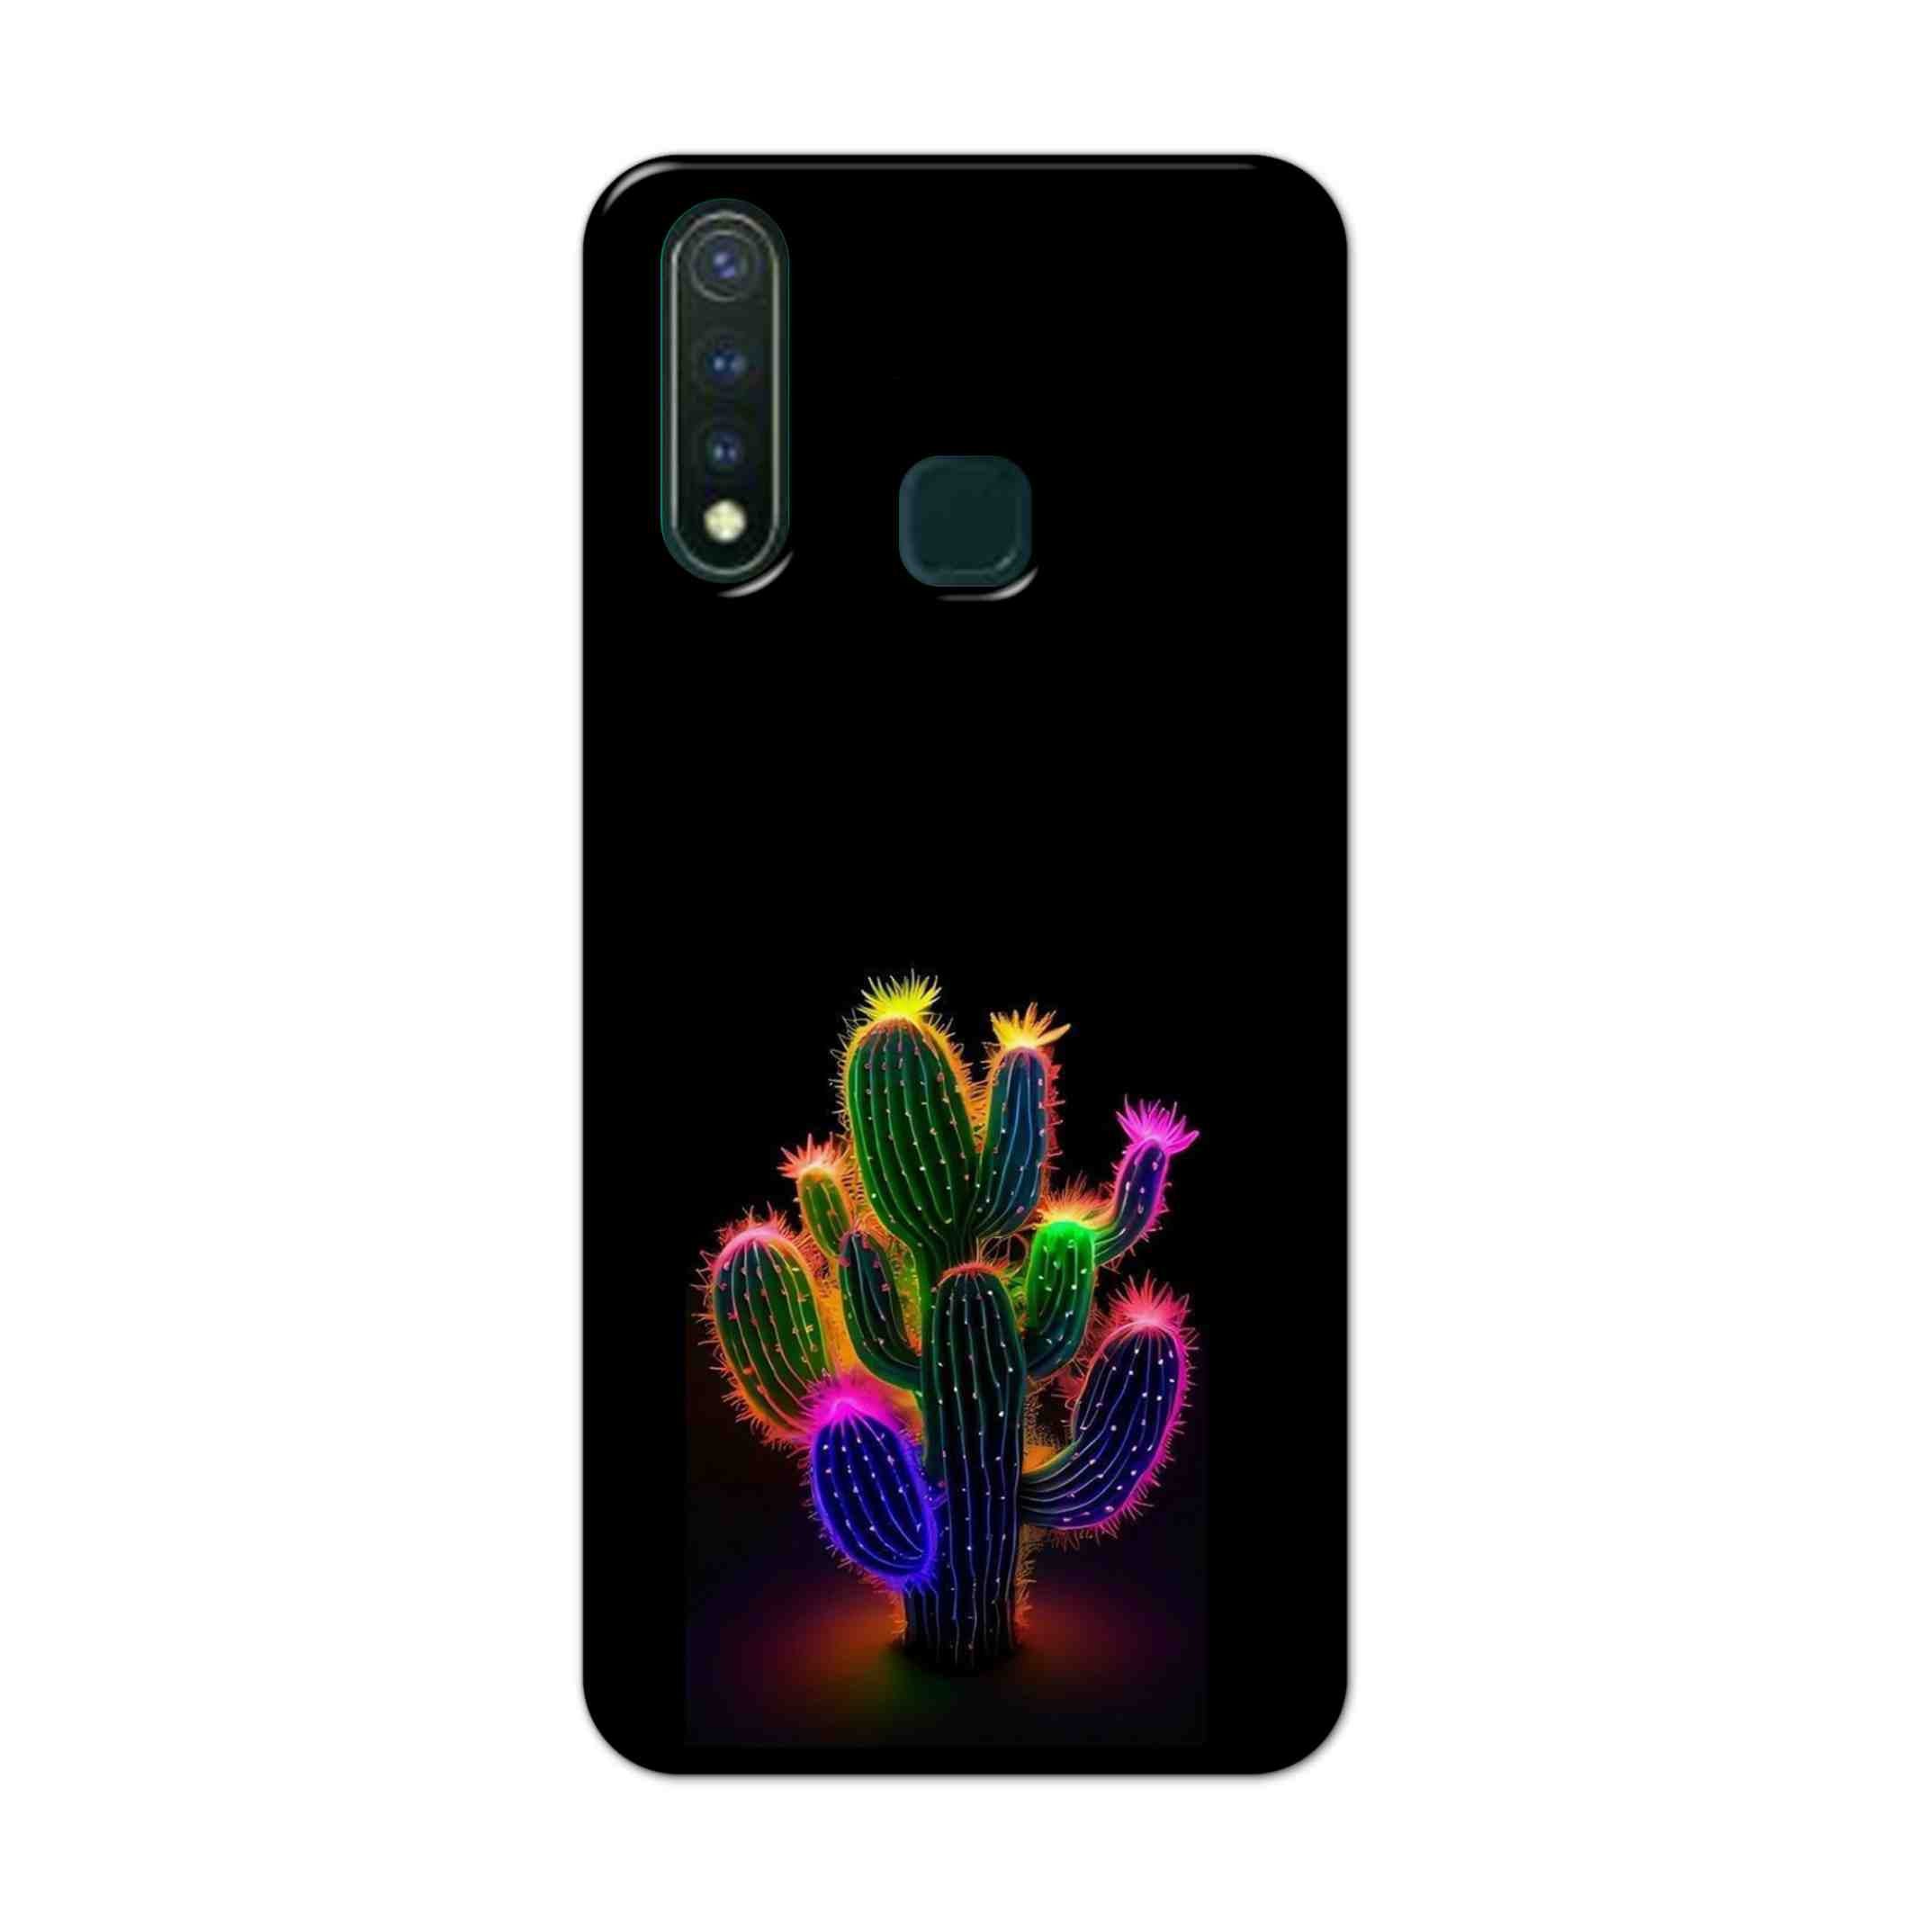 Buy Neon Flower Hard Back Mobile Phone Case Cover For Vivo U20 Online